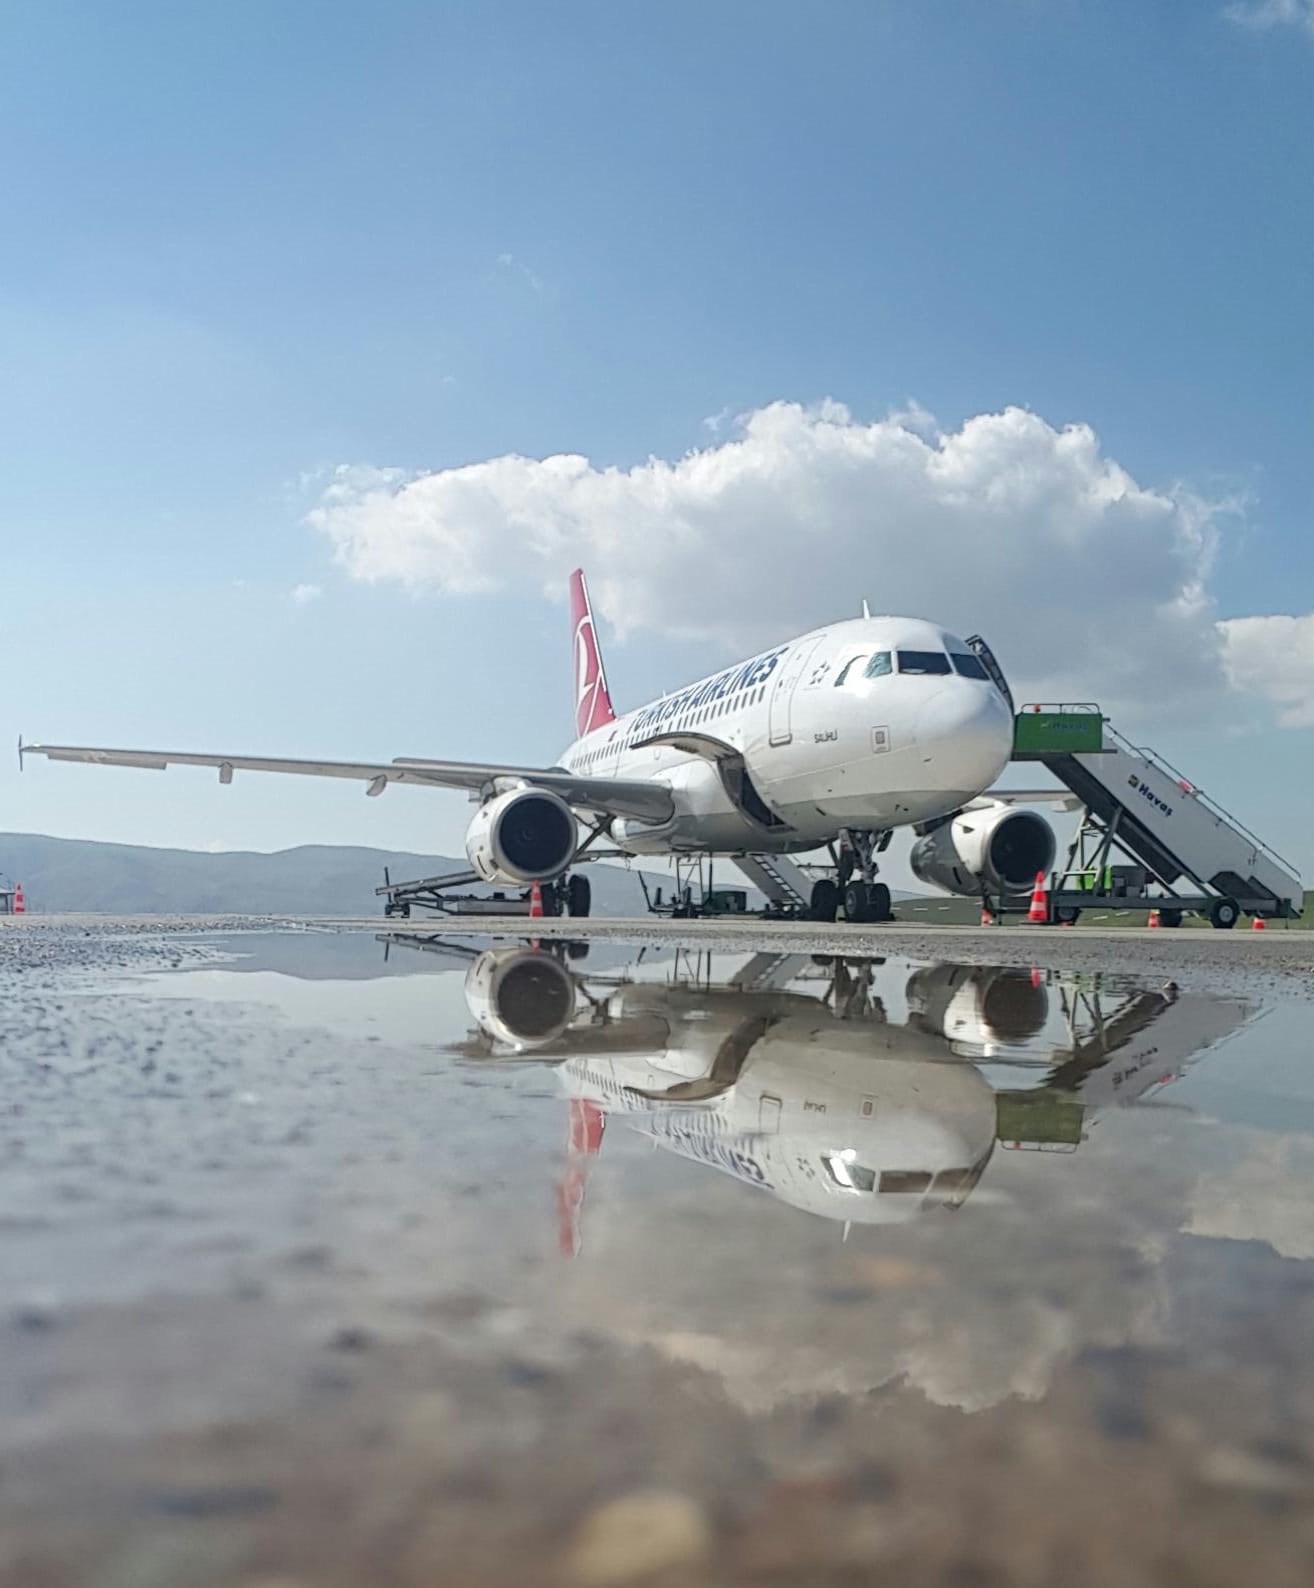 2018 წელს Turkish Airlines-ის წმინდა მოგებამ 753 მლნ დოლარი შეადგინა  ​